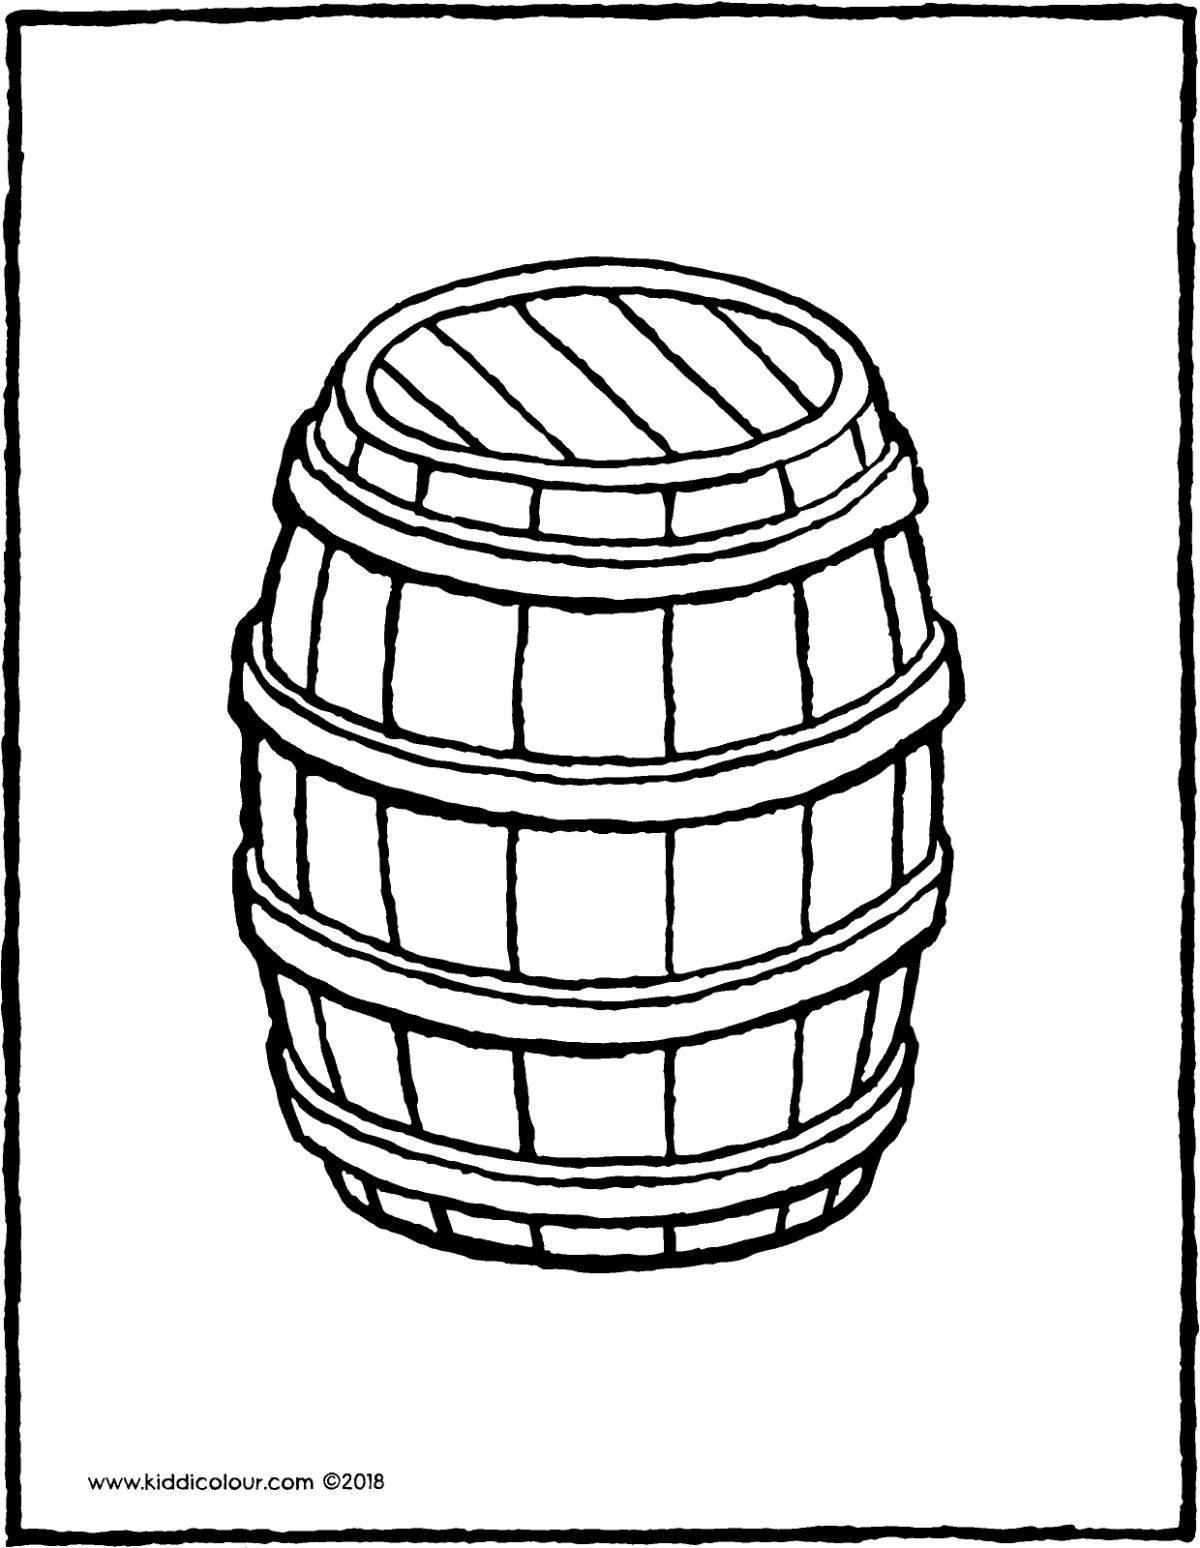 Coloring barrel for kids